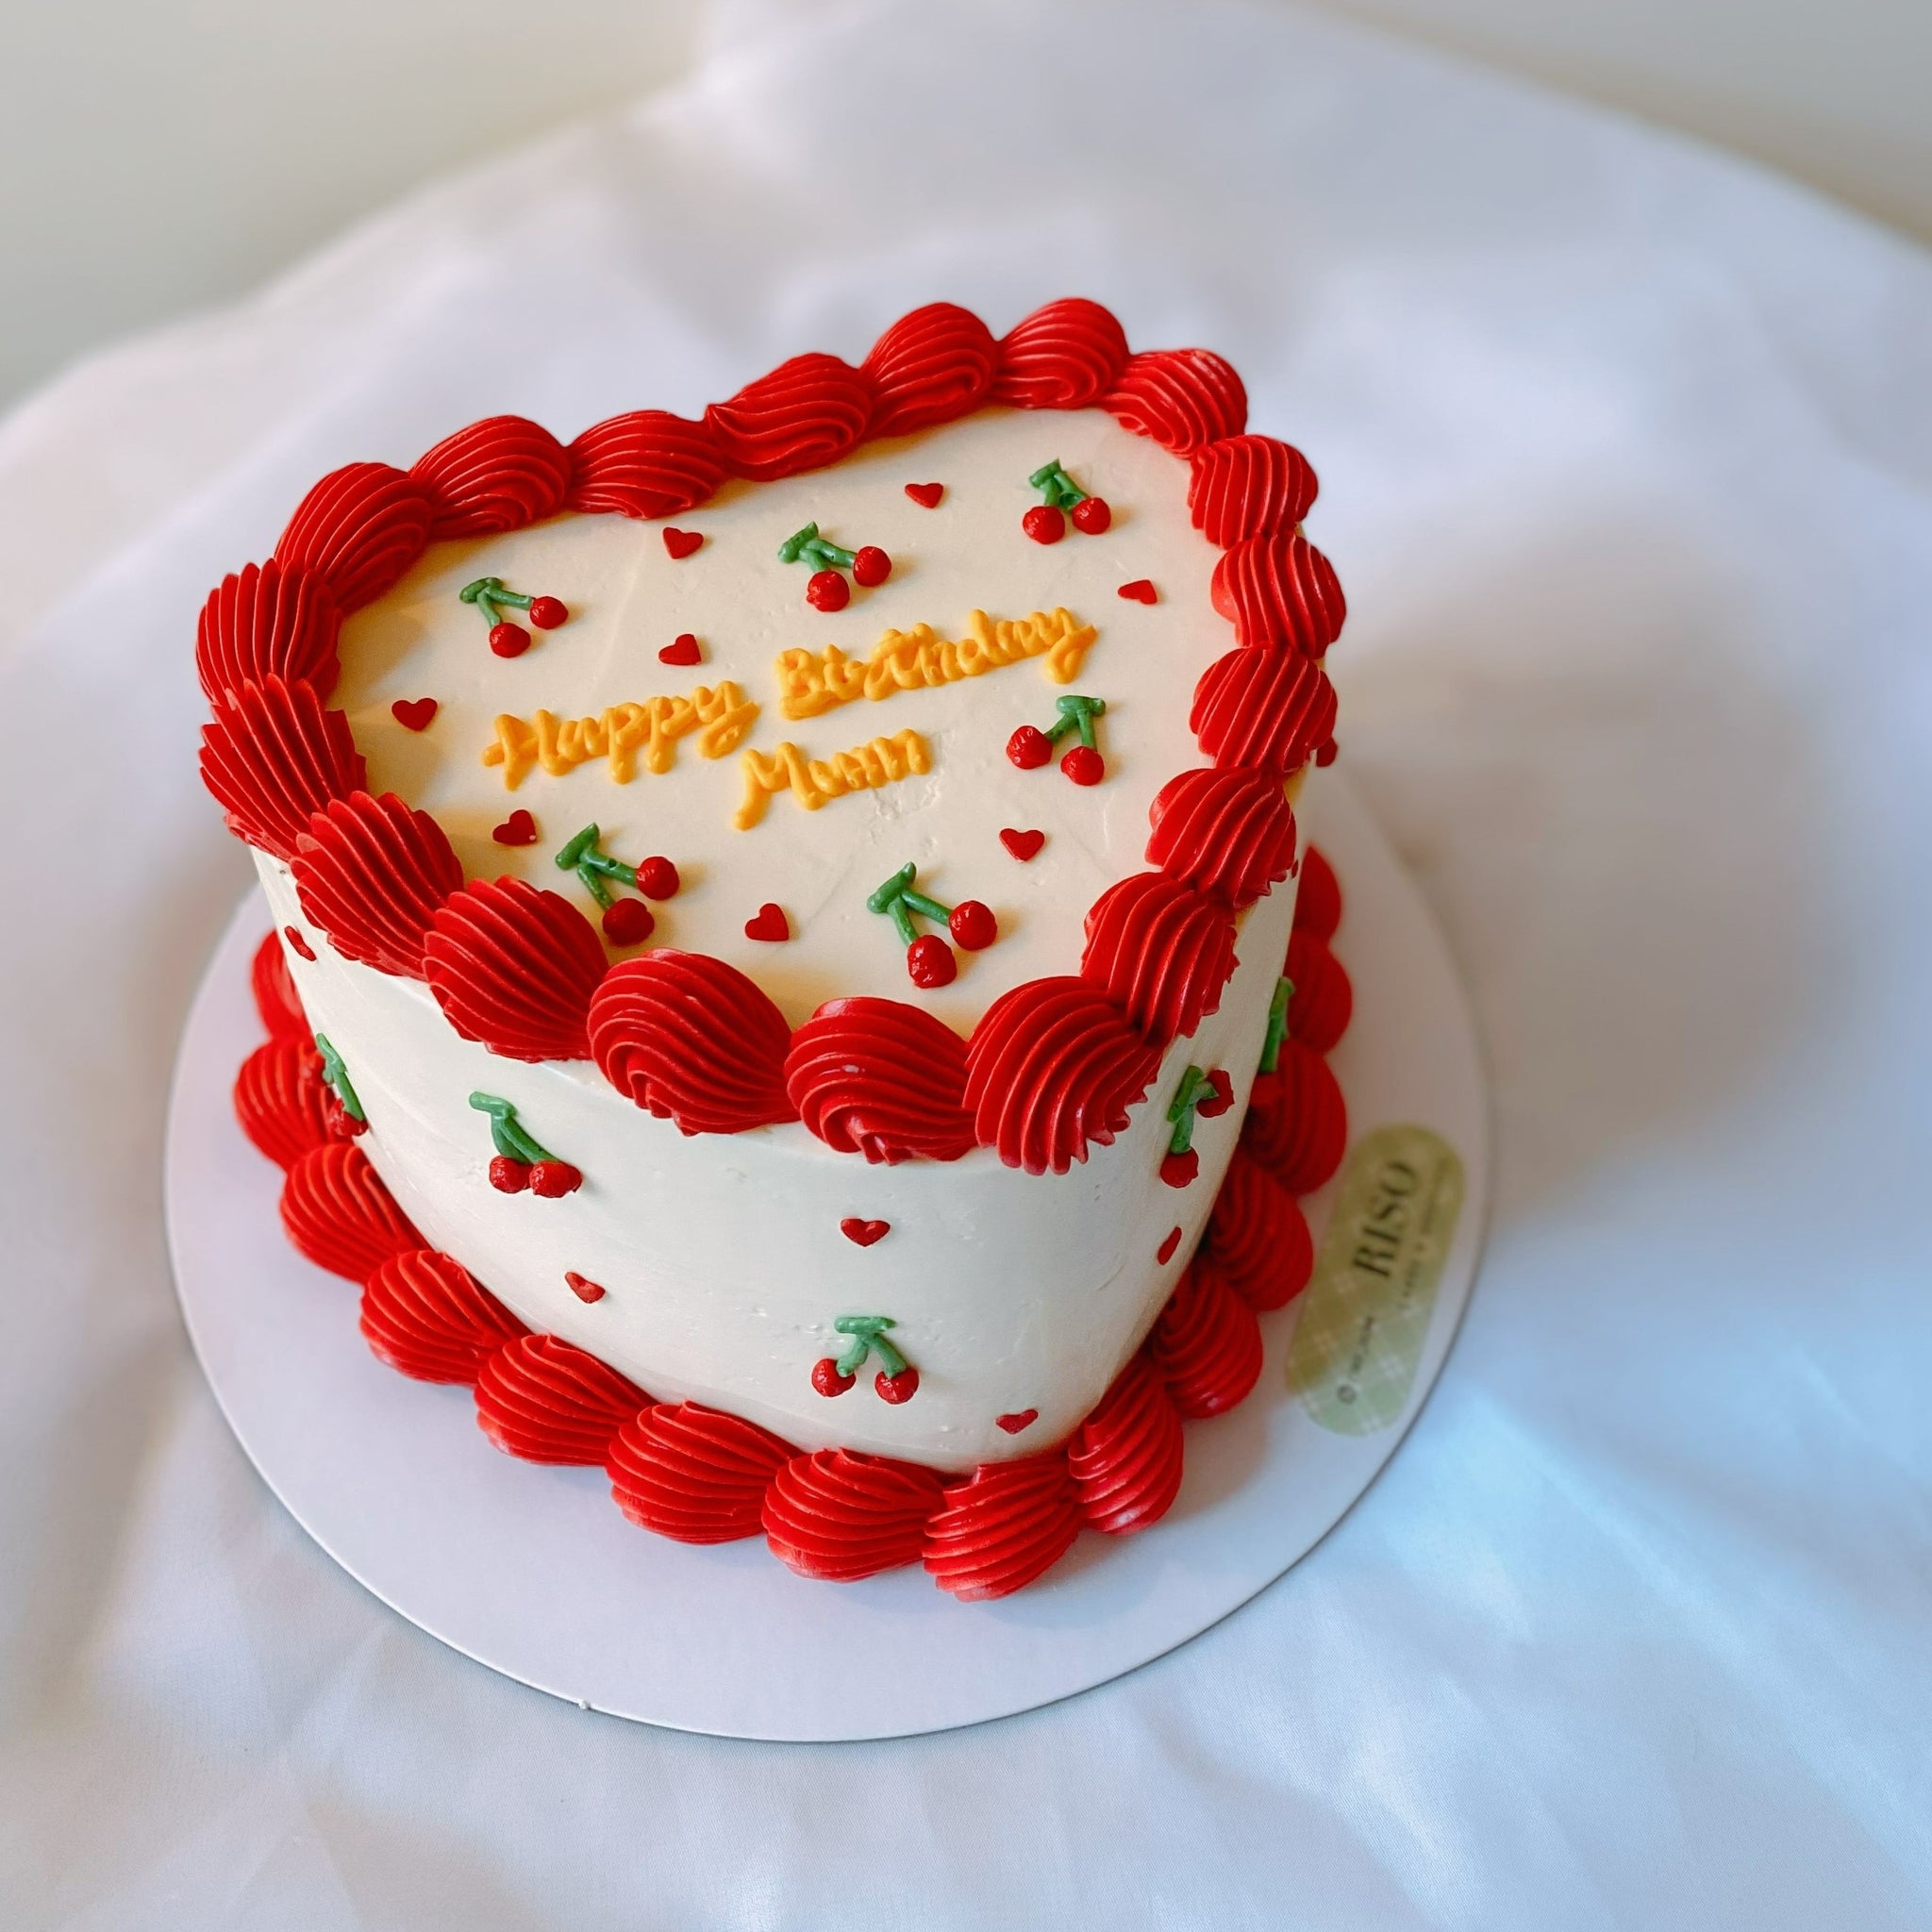 Order Pineapple Cherry Cake Online @ Rs. 1469 - SendBestGift